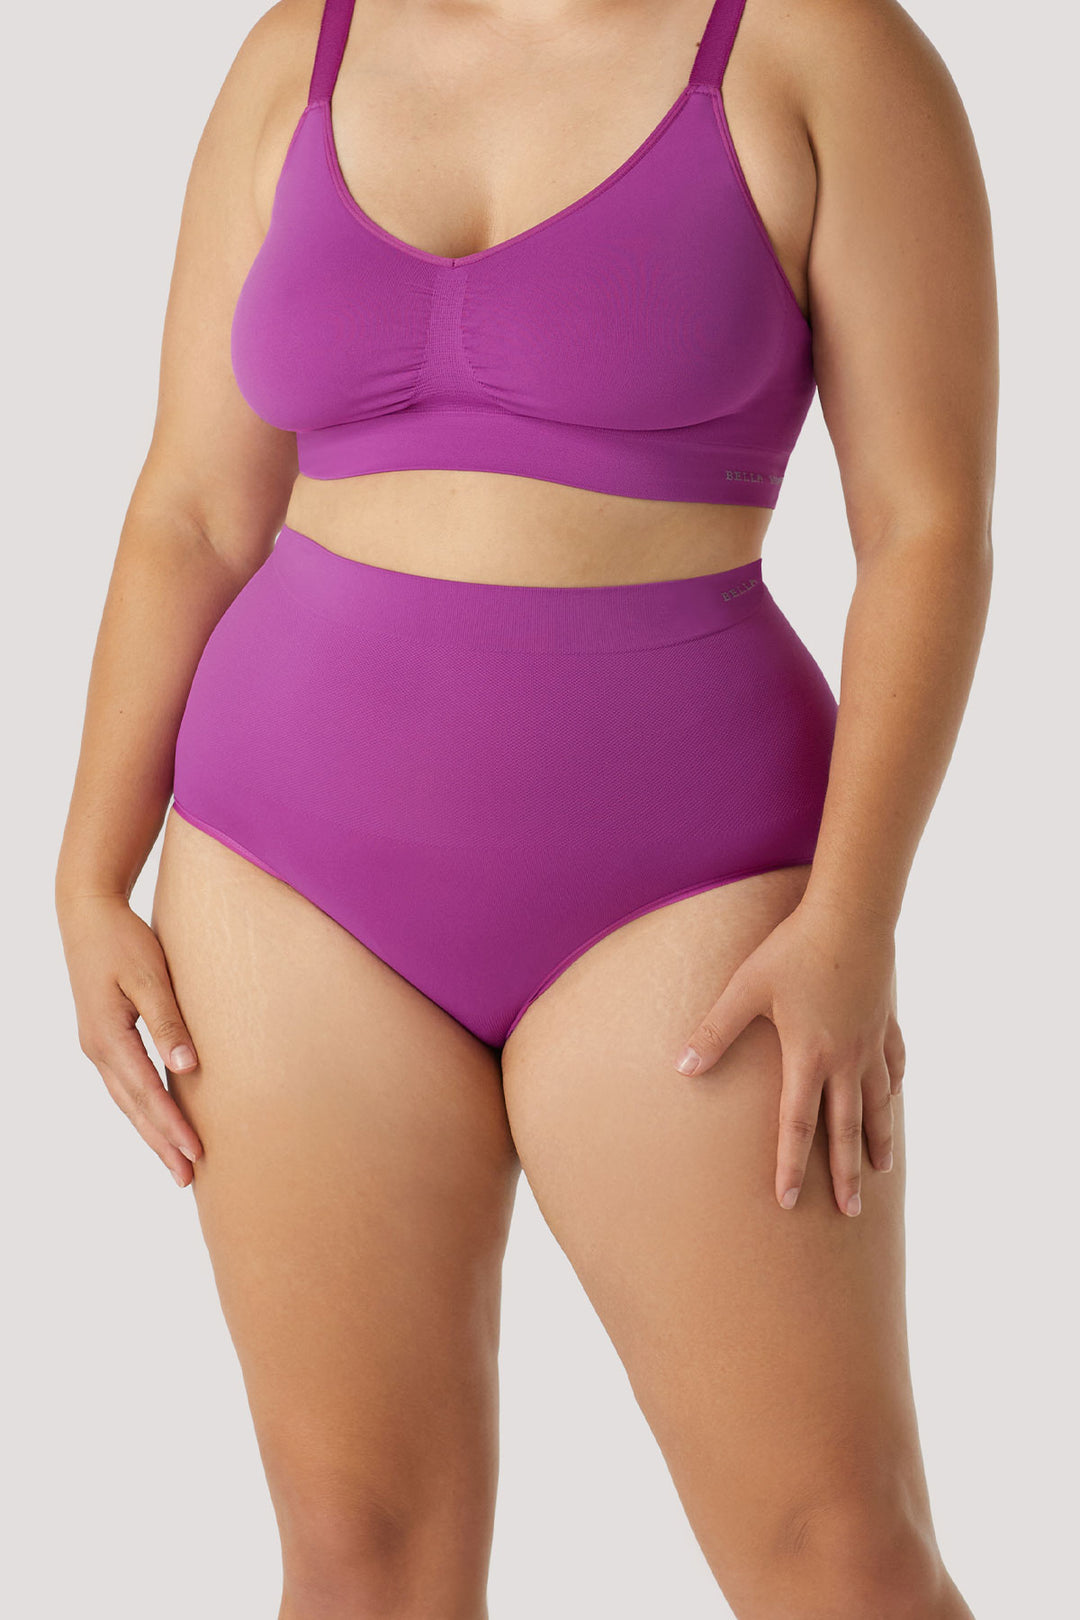 Women's slimming & firming underwear 3 pack | Bella Bodies Australia | Viola | Front